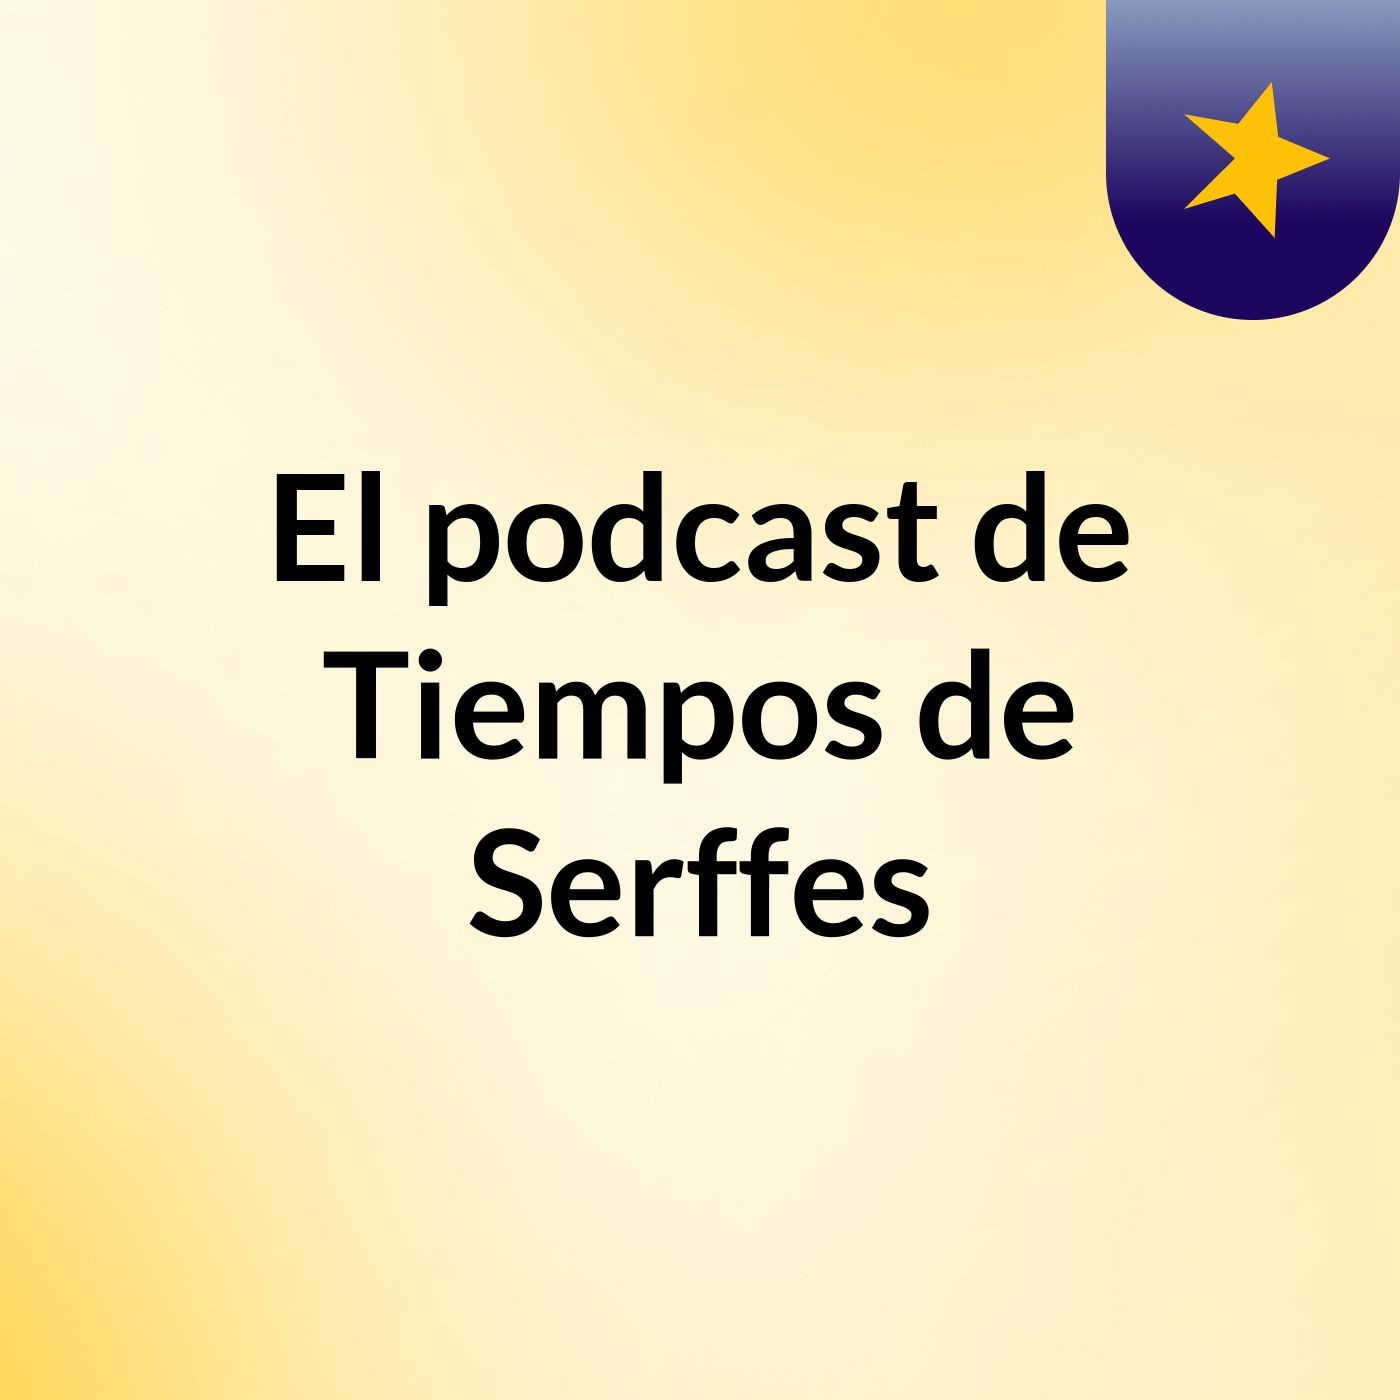 Episodio 34 - El podcast de Tiempos de Serffes